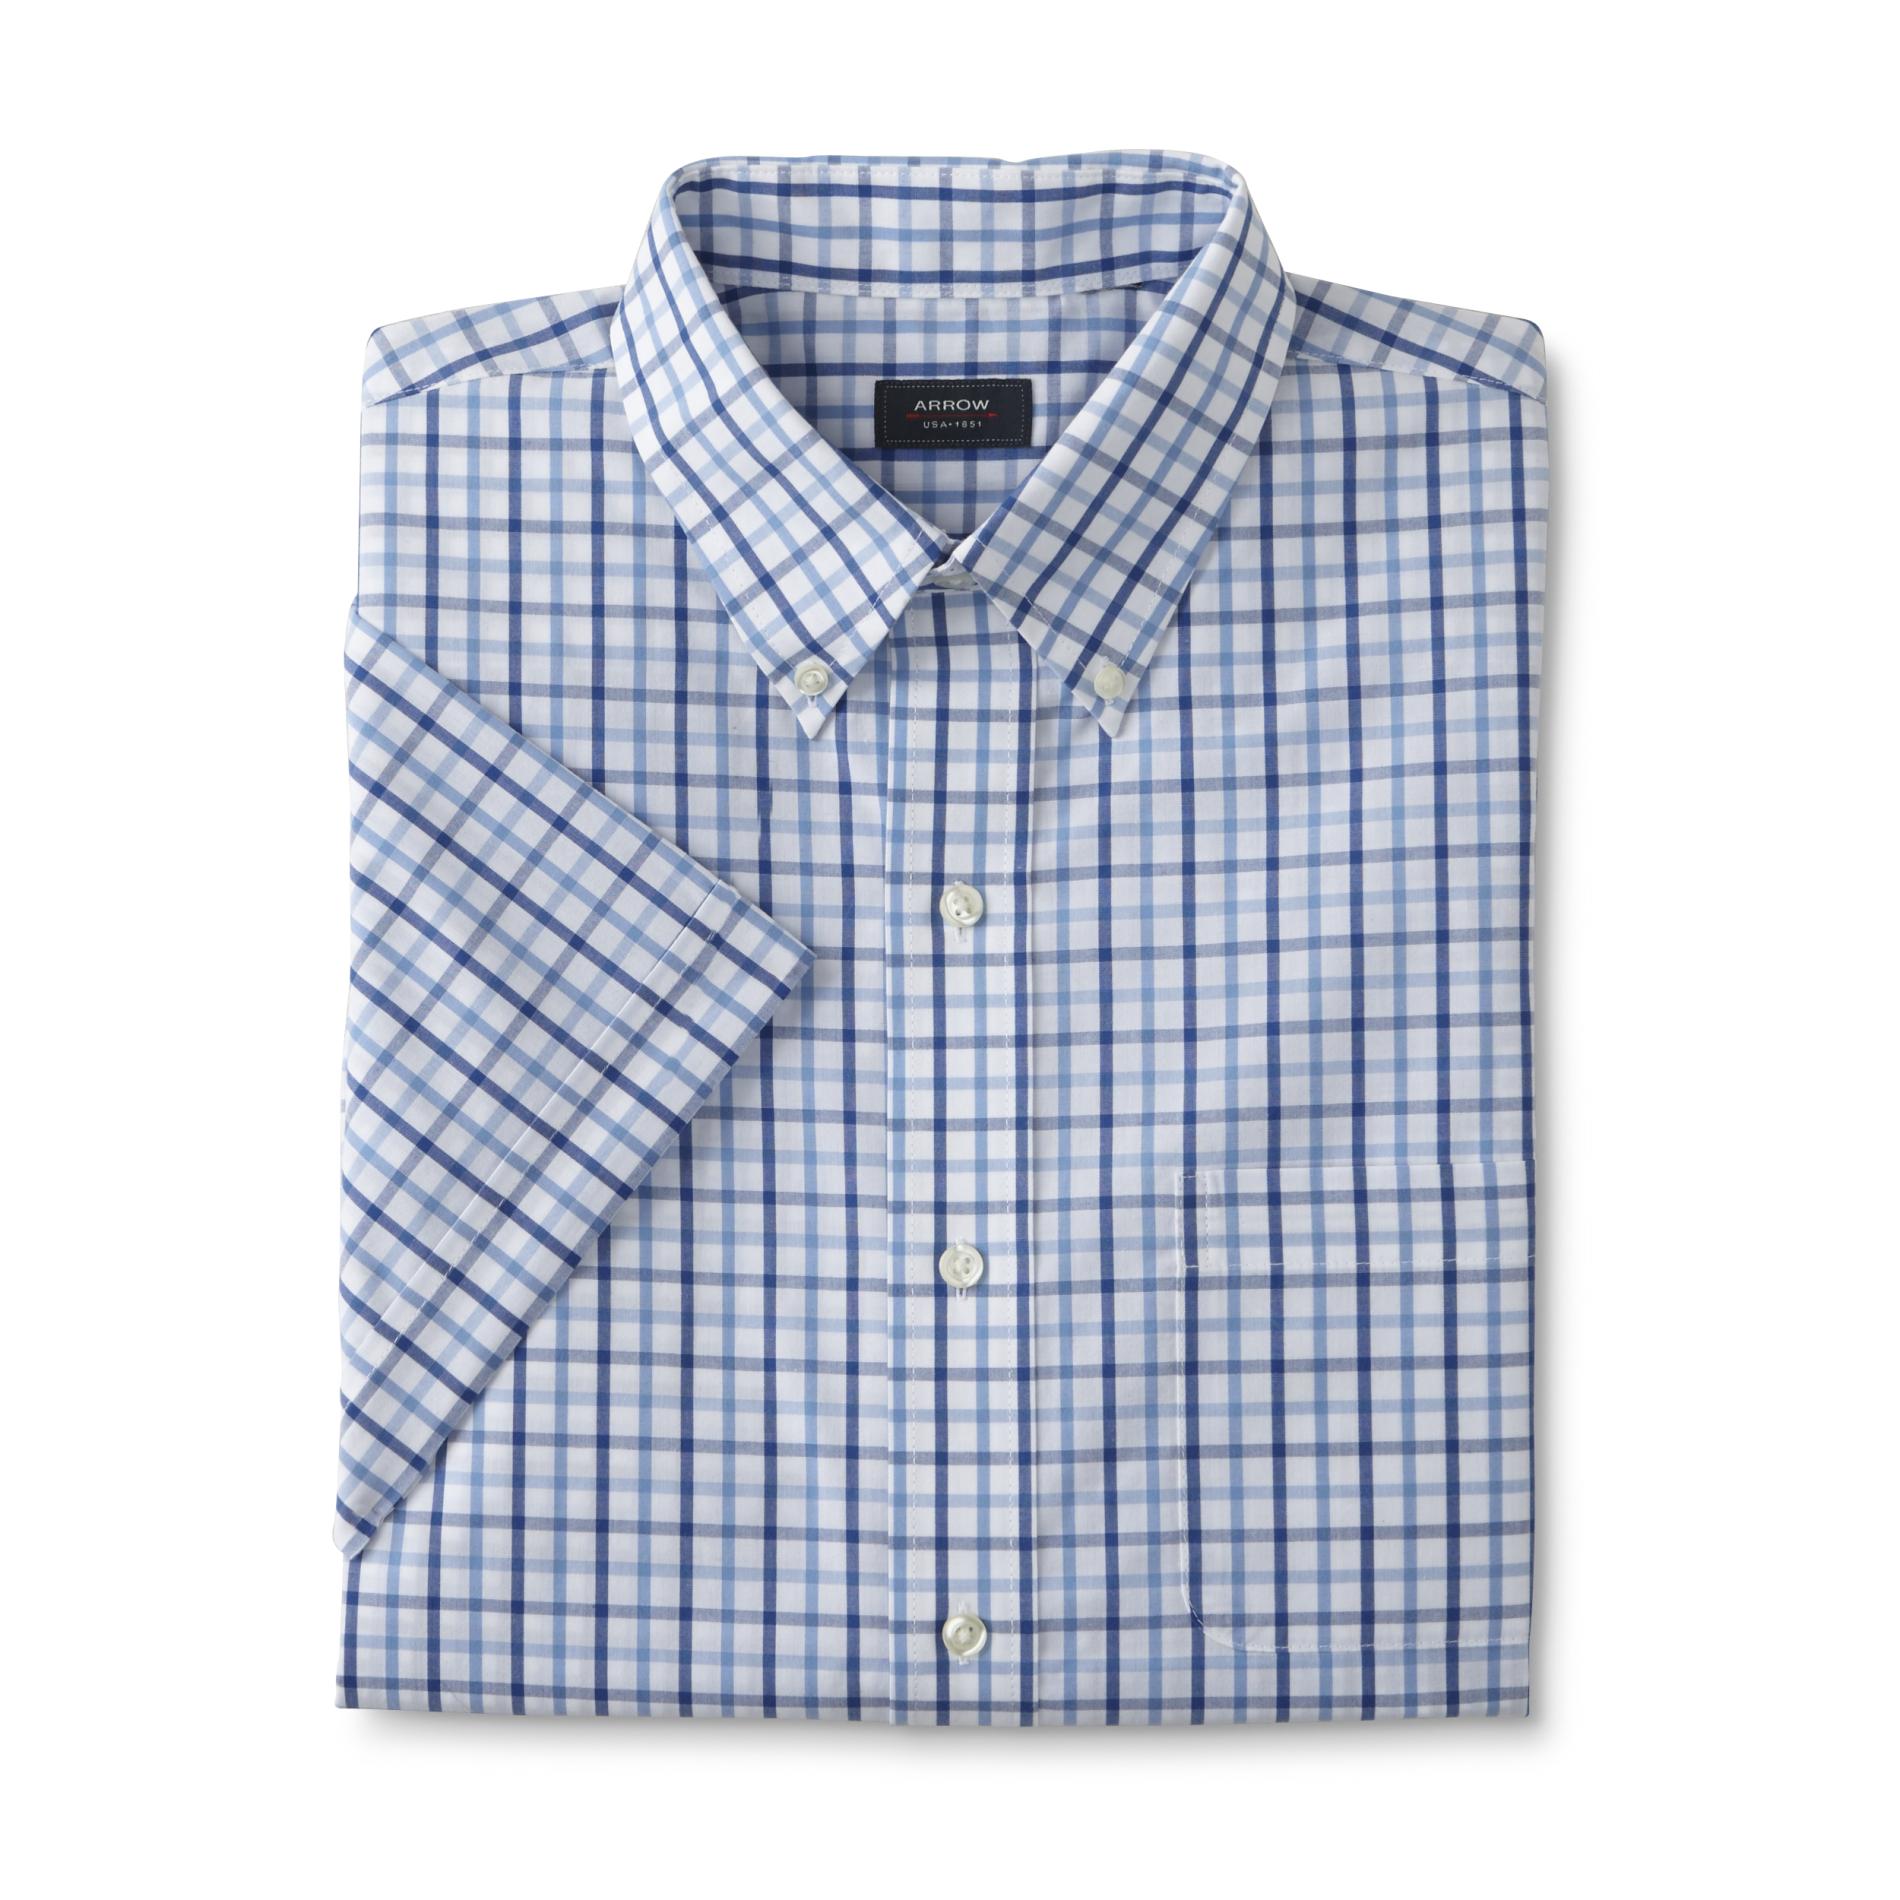 Men's Short-Sleeve Dress Shirt - Check